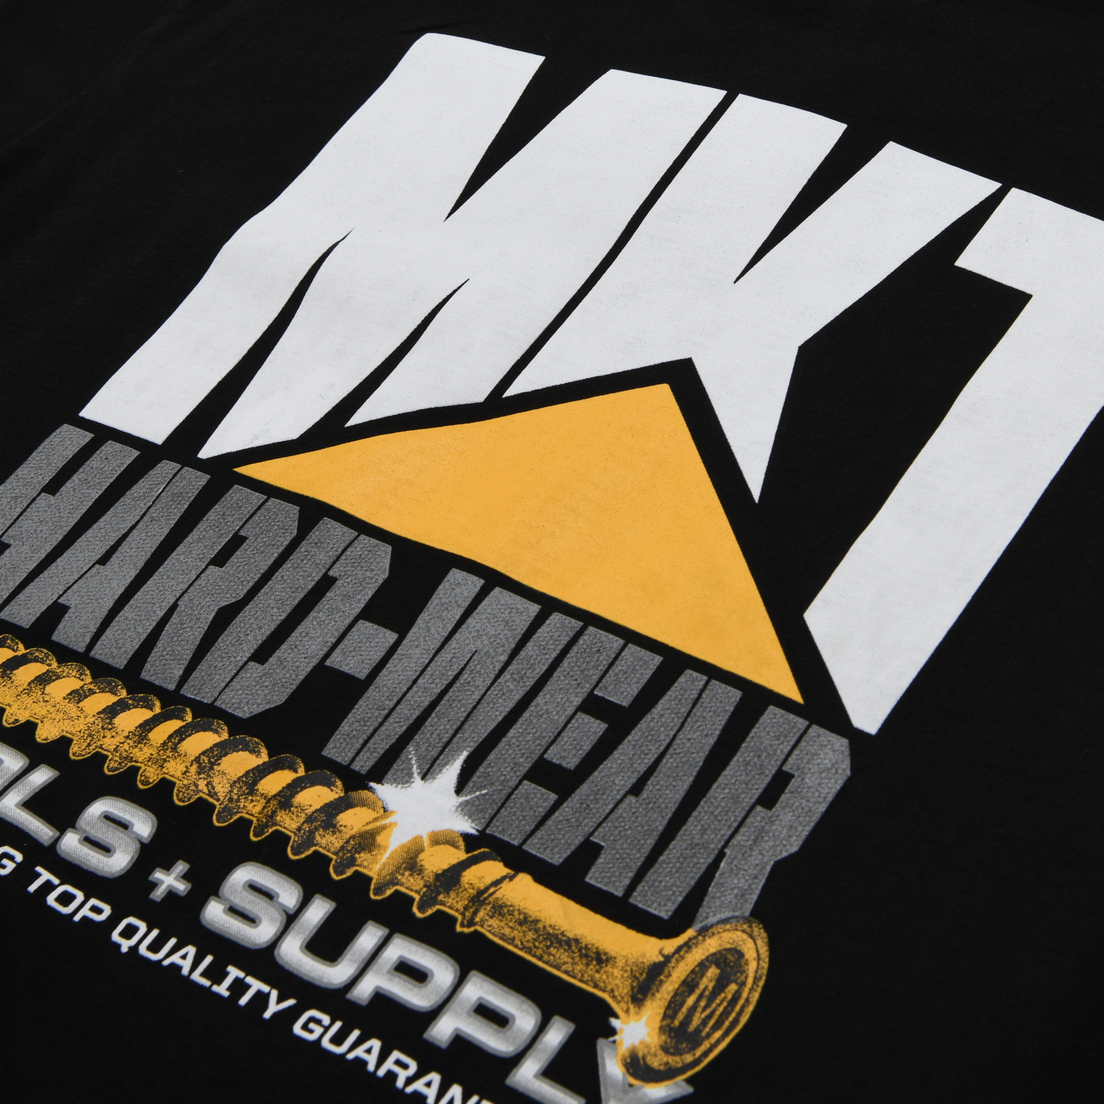 MARKET Мужская футболка Market Hardware Pocket